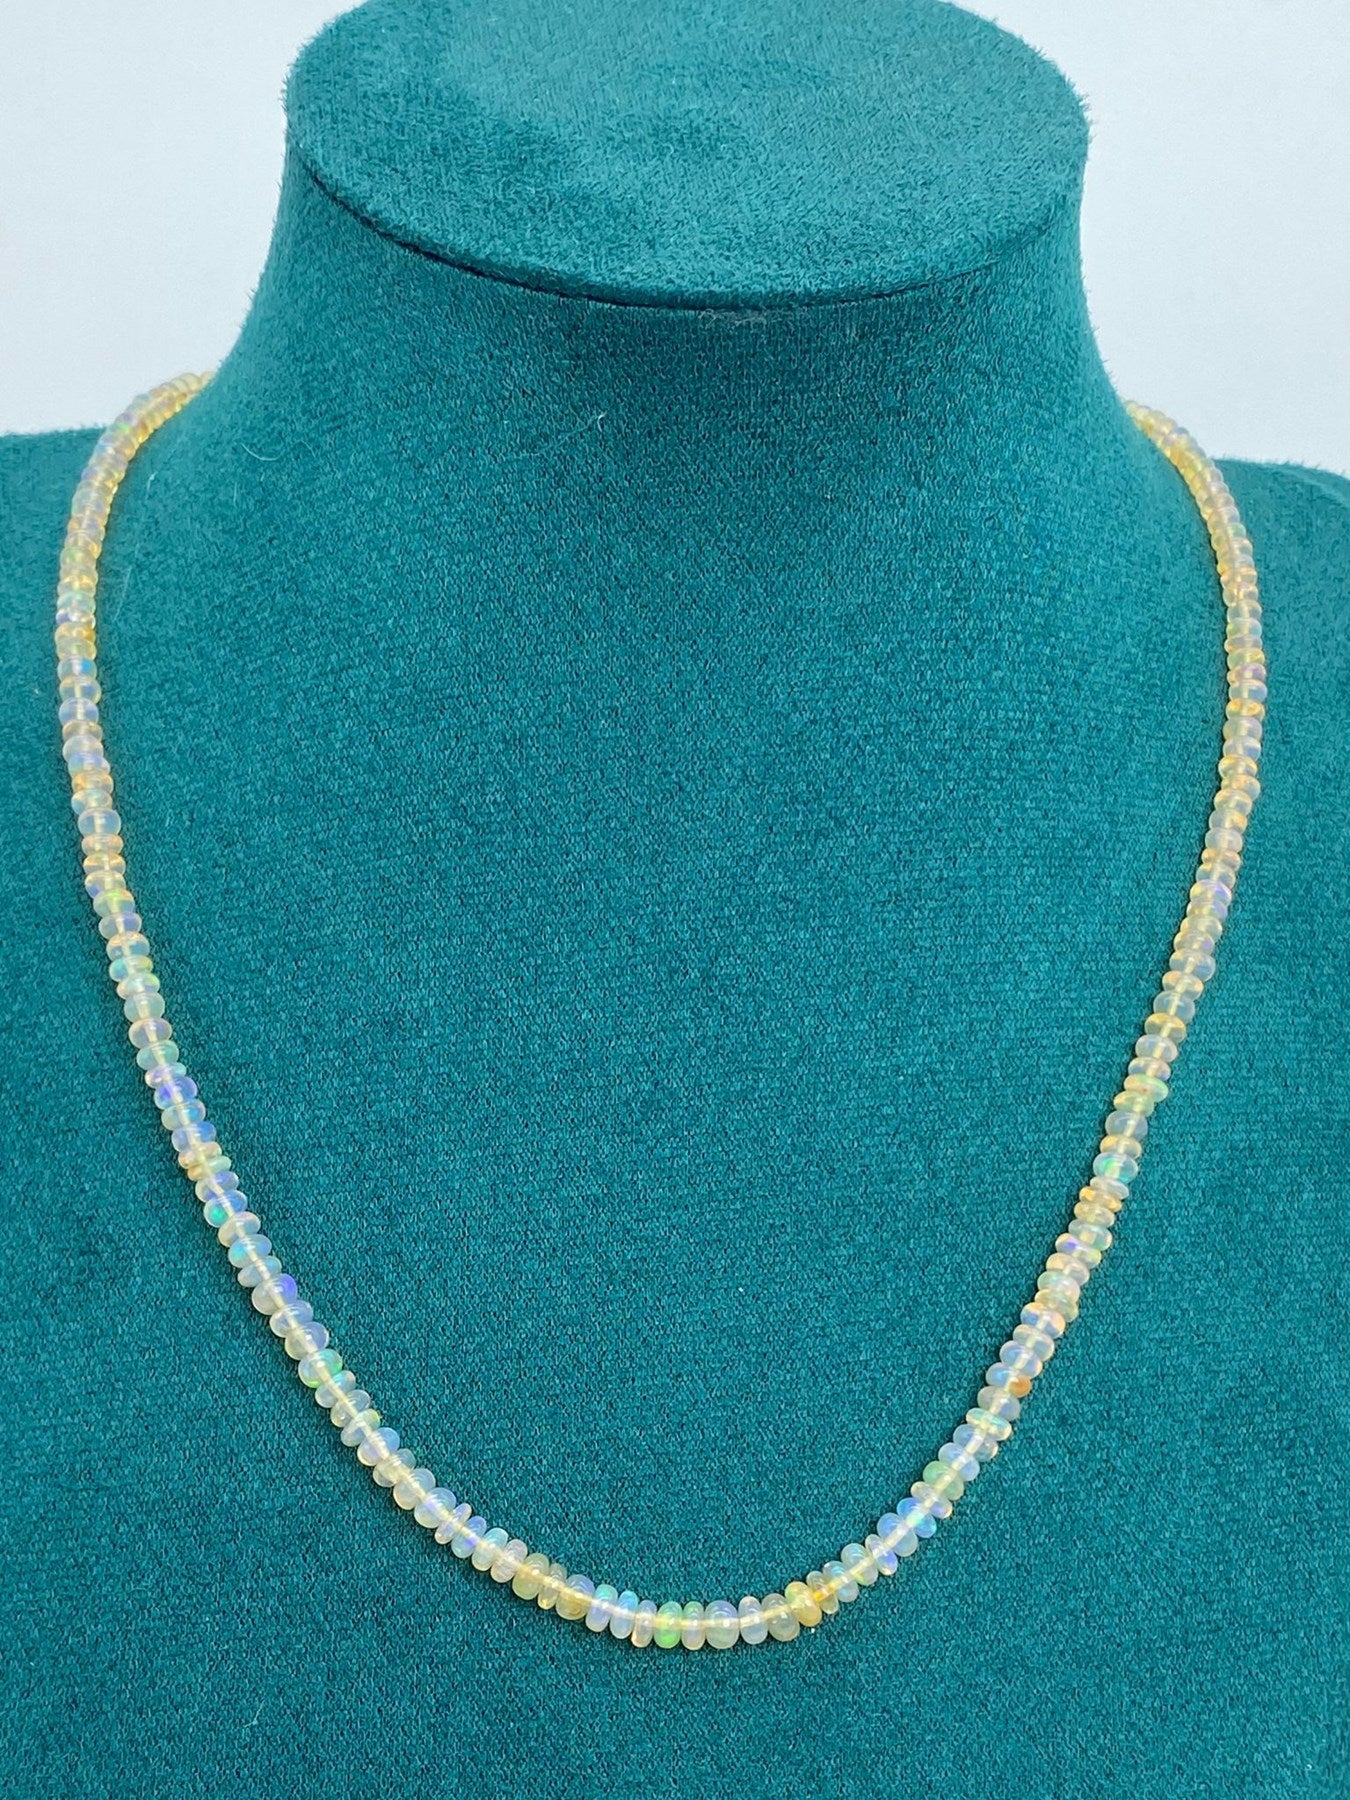 Ethiopian Opal A++ Gemstone Necklace 3mm